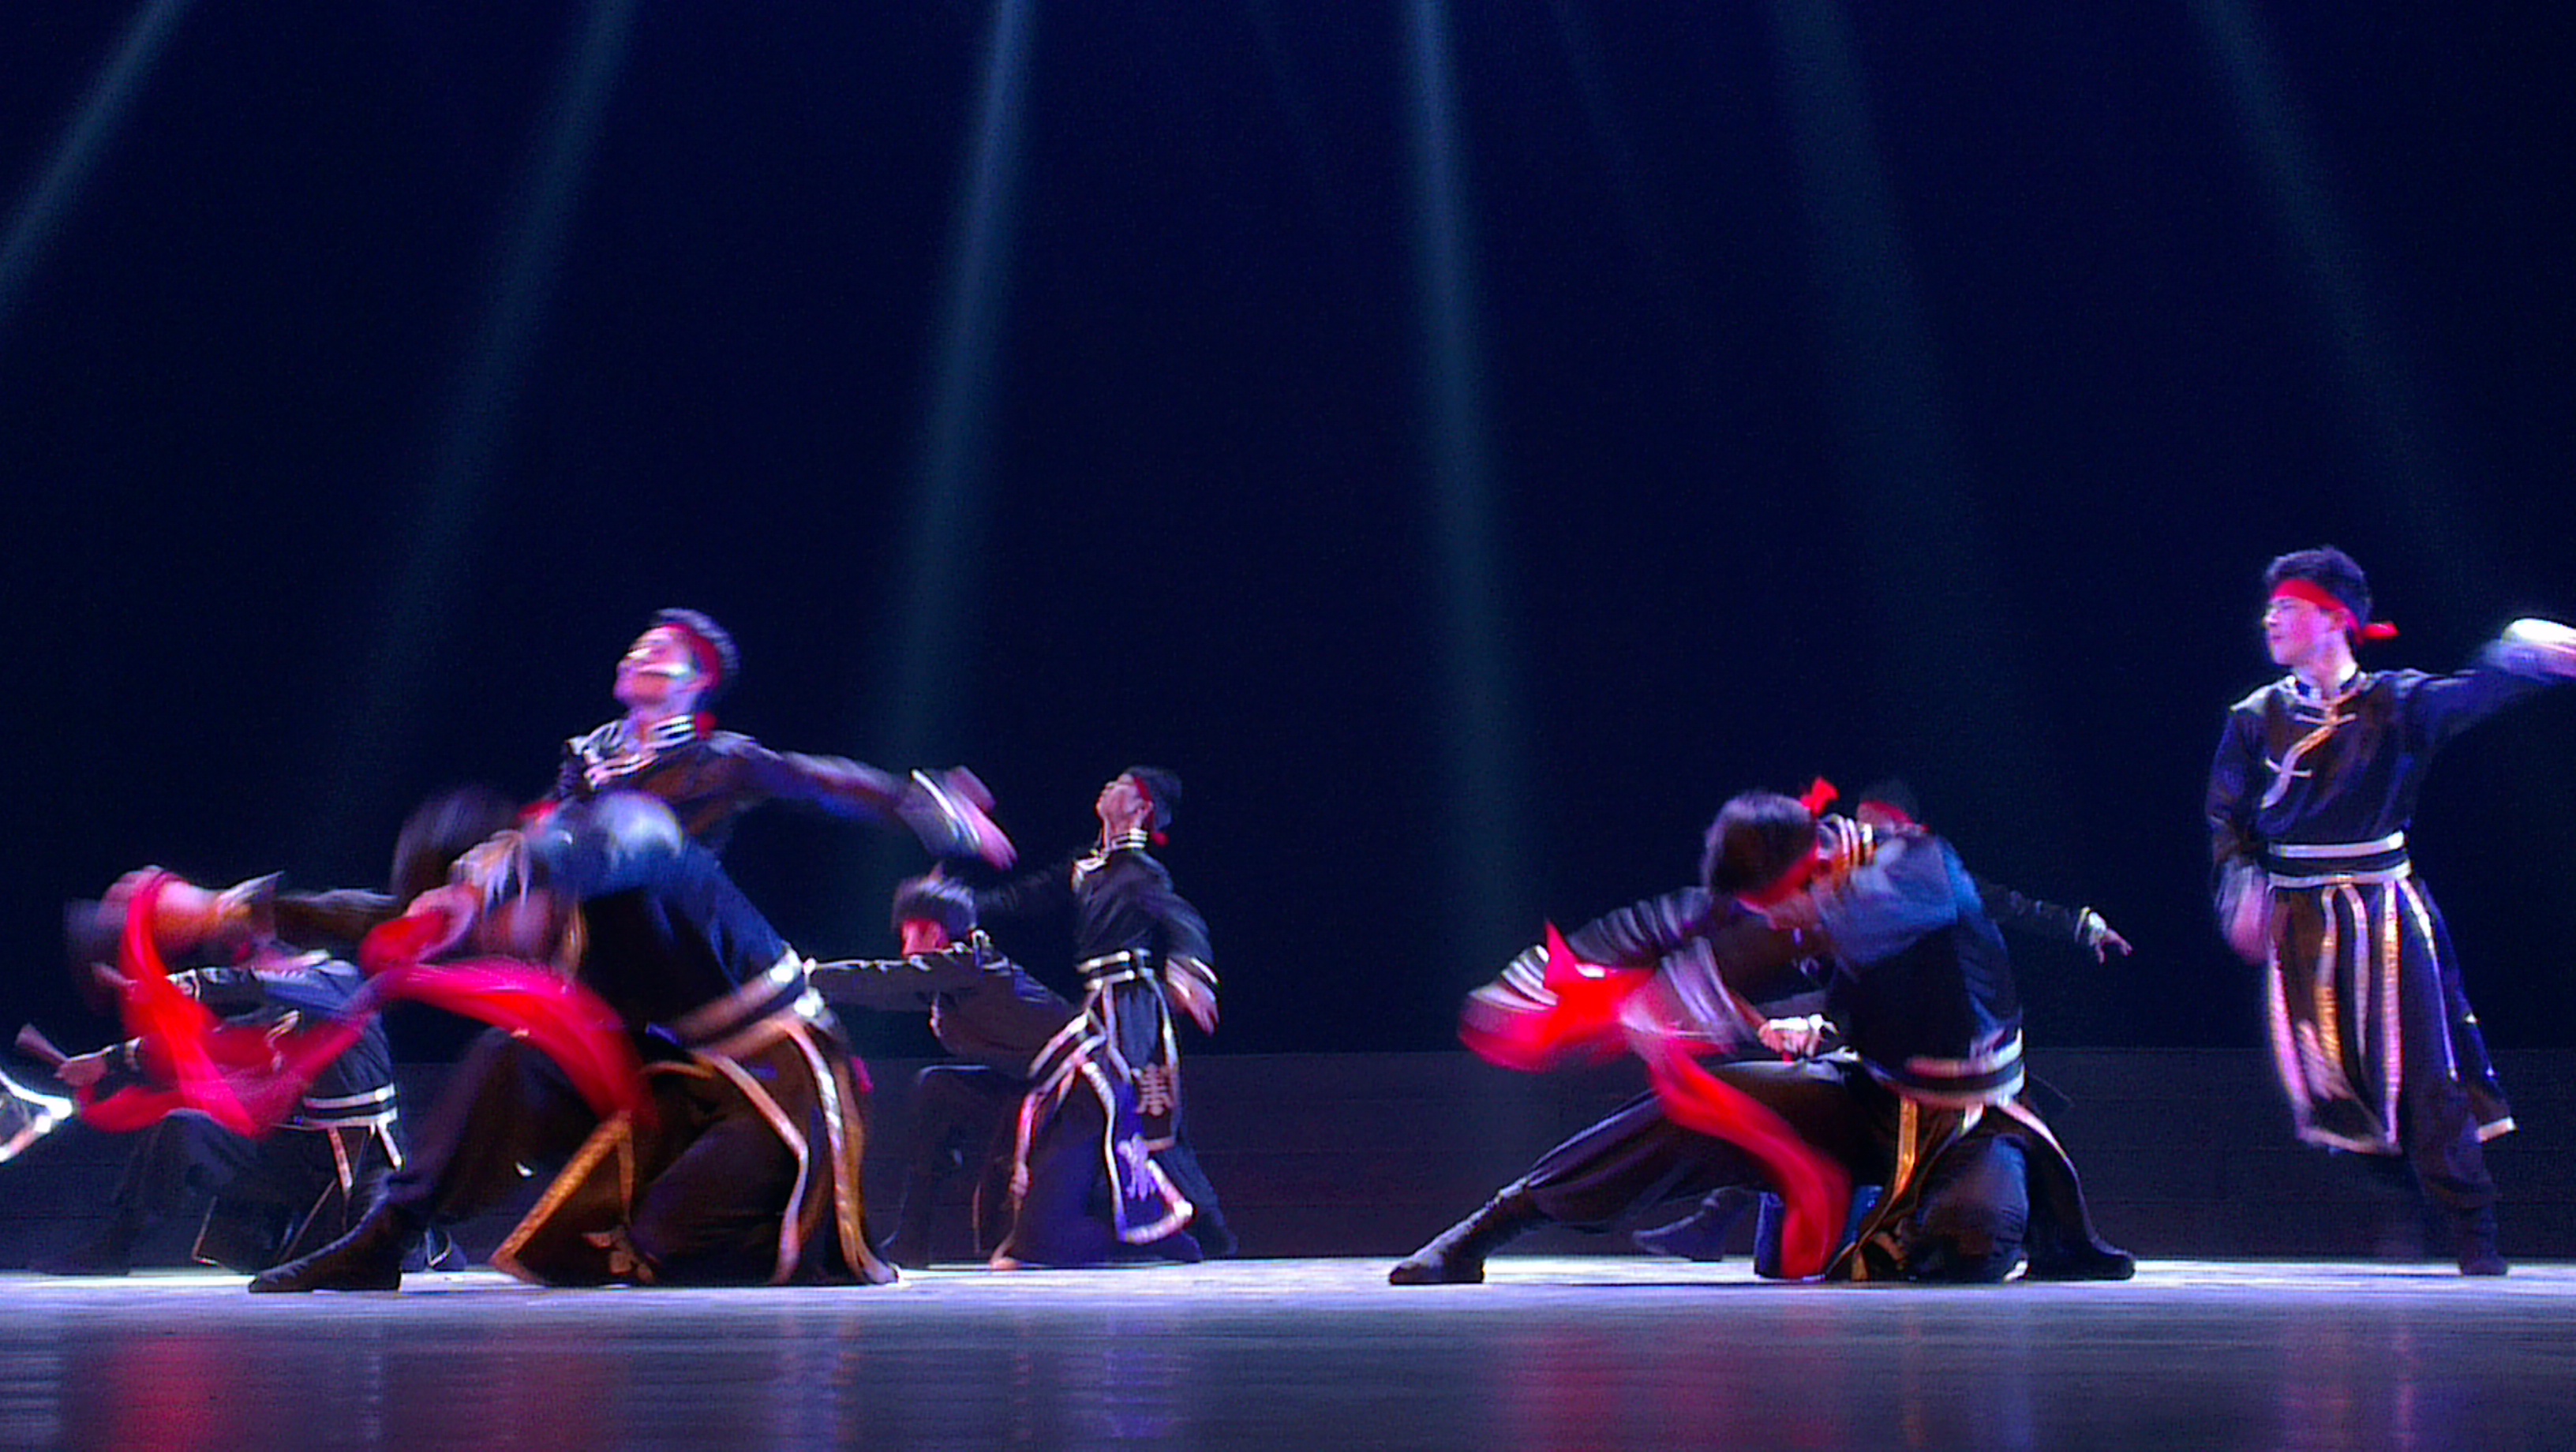 蒙古舞谢幕动作图片图片